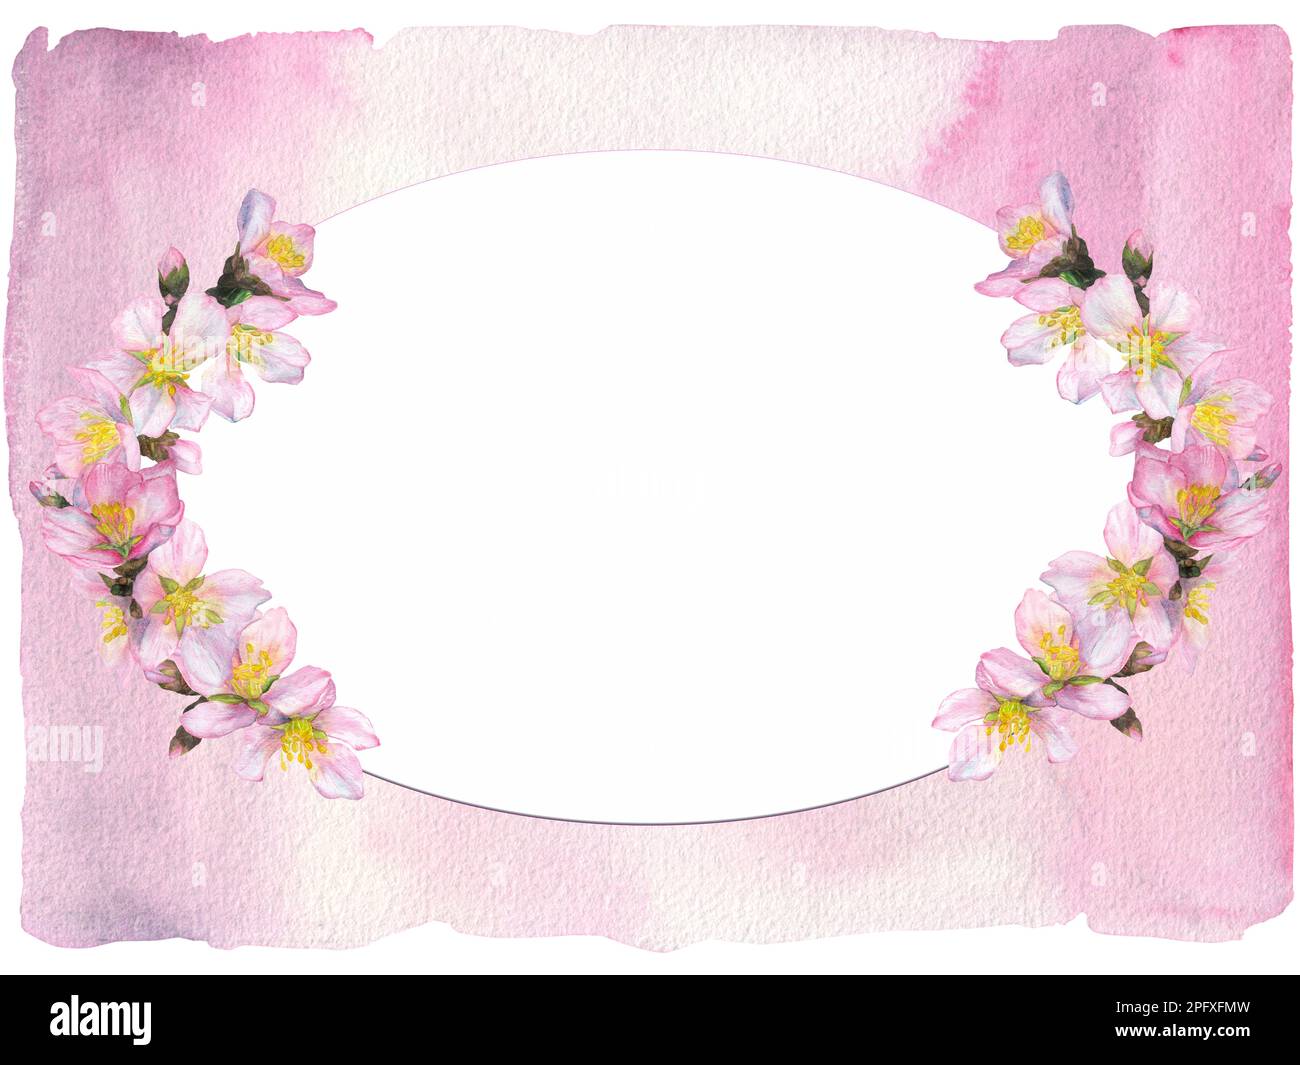 Aquarelle Illustration, ovaler Rahmen mit halbkreisförmigen Kirschblüten auf pinkfarbenem, wasserfarbenem Hintergrund. Geeignet für das Design von Pfosten Stockfoto